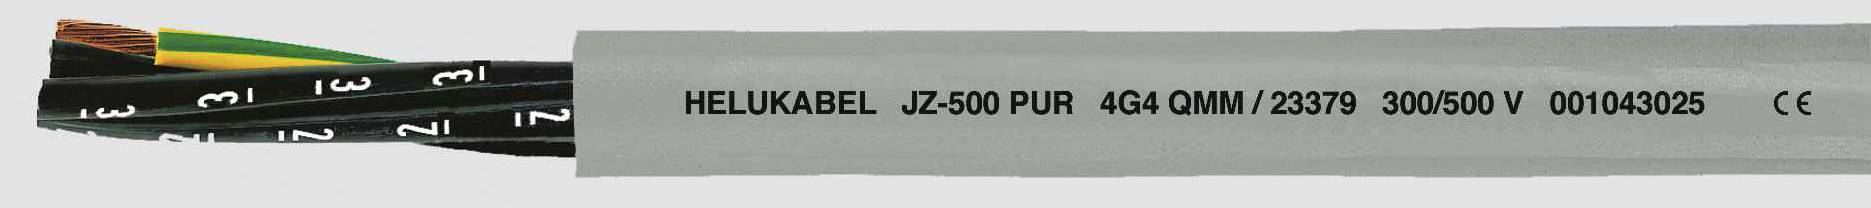 HELUKABEL JZ-500 PUR Steuerleitung 7 G 1 mm² Grau 23351 100 m